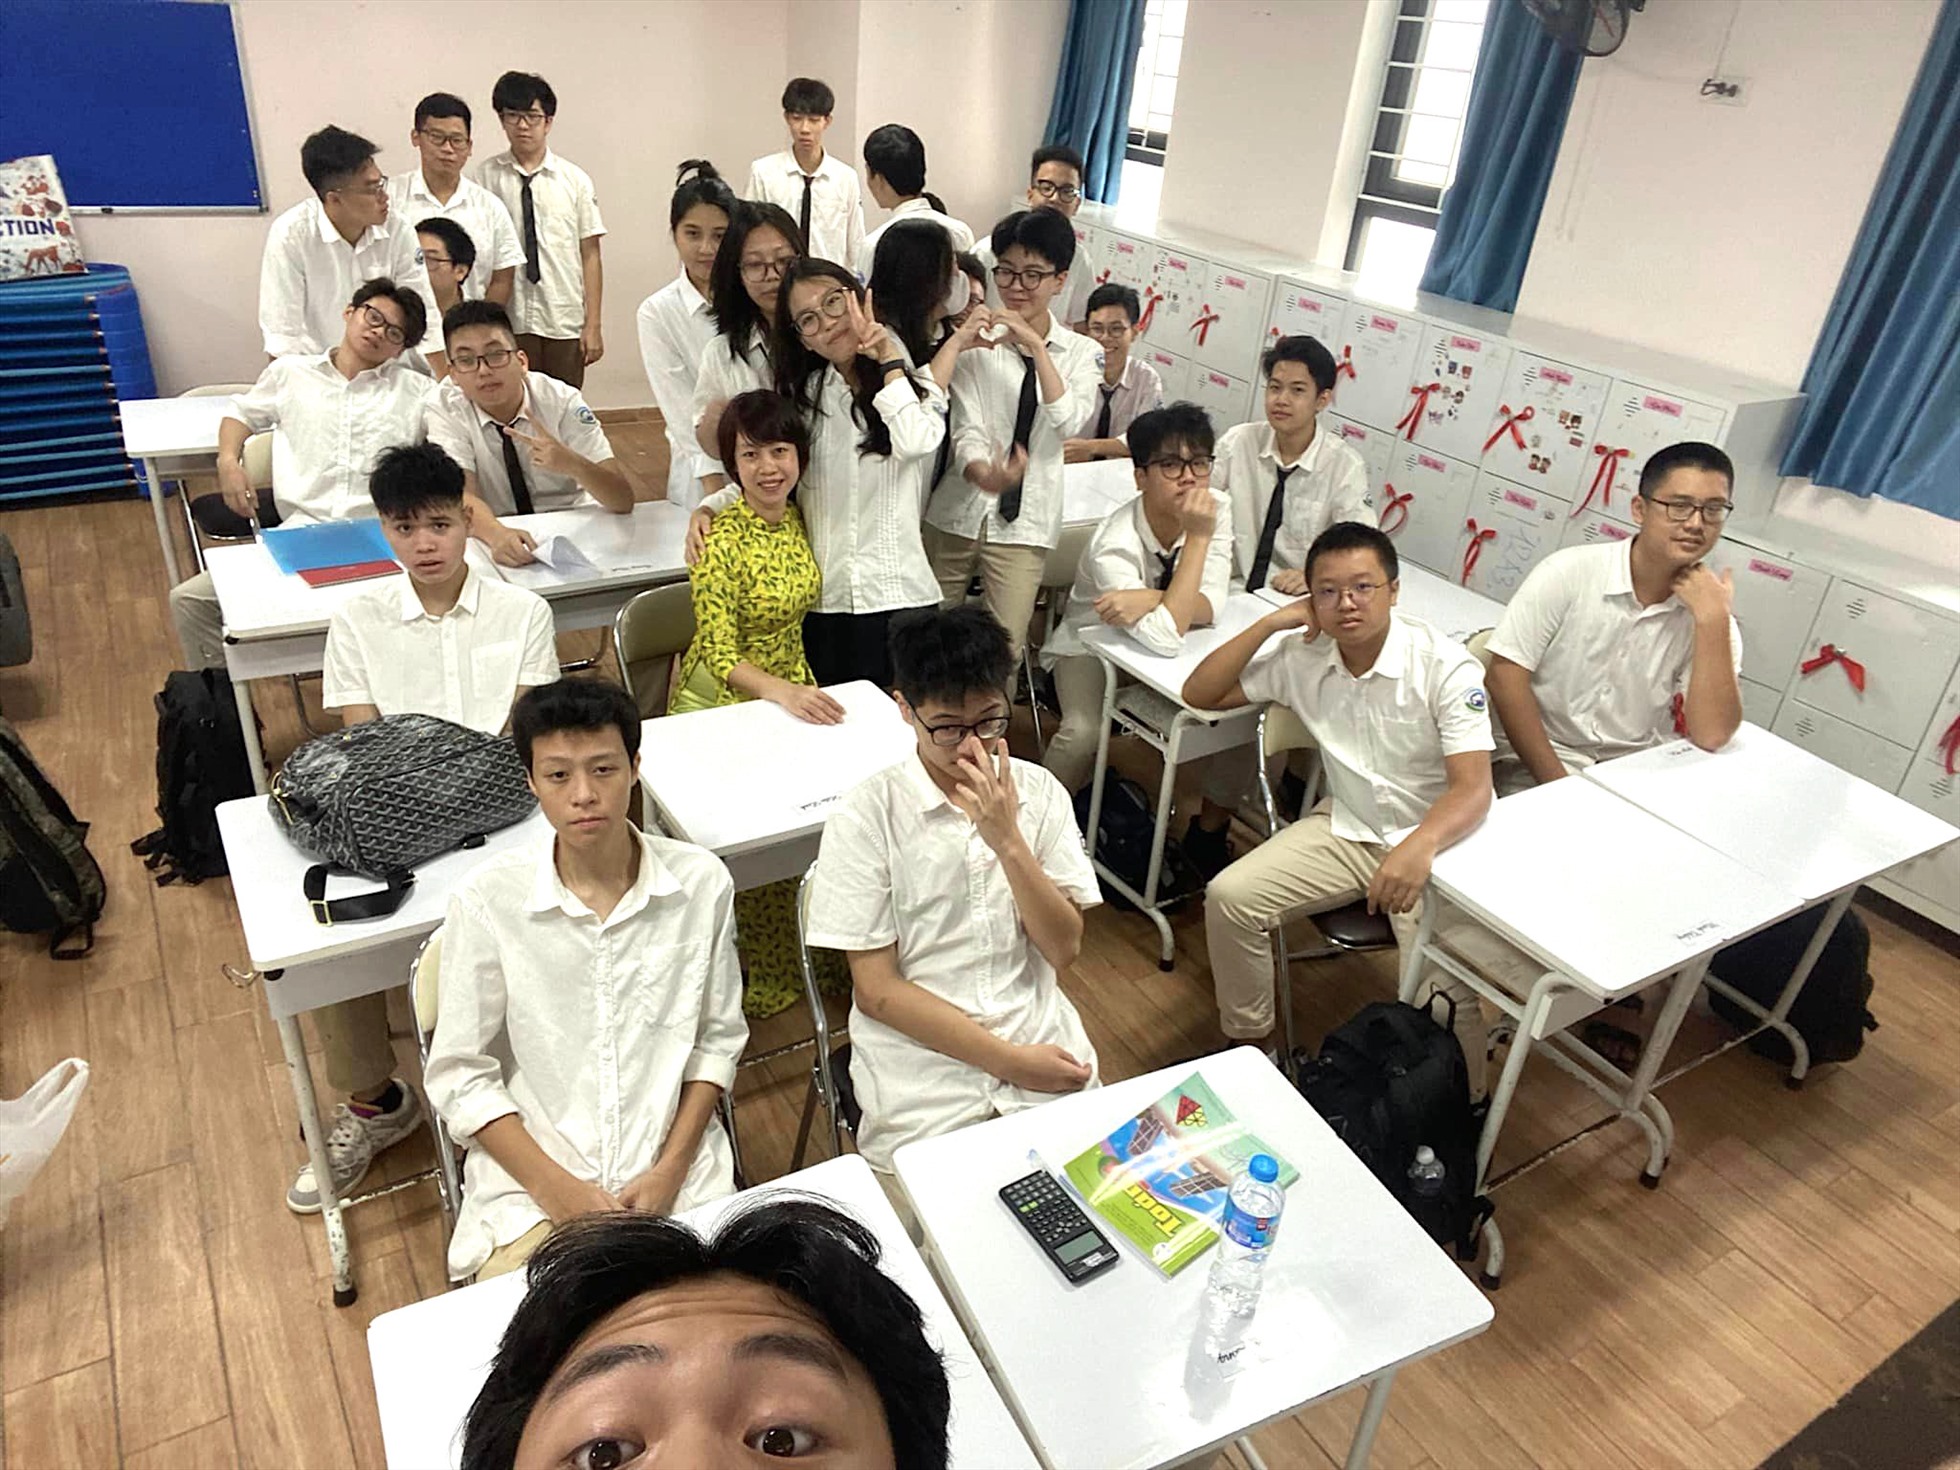 Cô Quý Hoa chụp ảnh cùng học trò trong ngày tựu trường 1.8. Ảnh: Nhân vật cung cấp